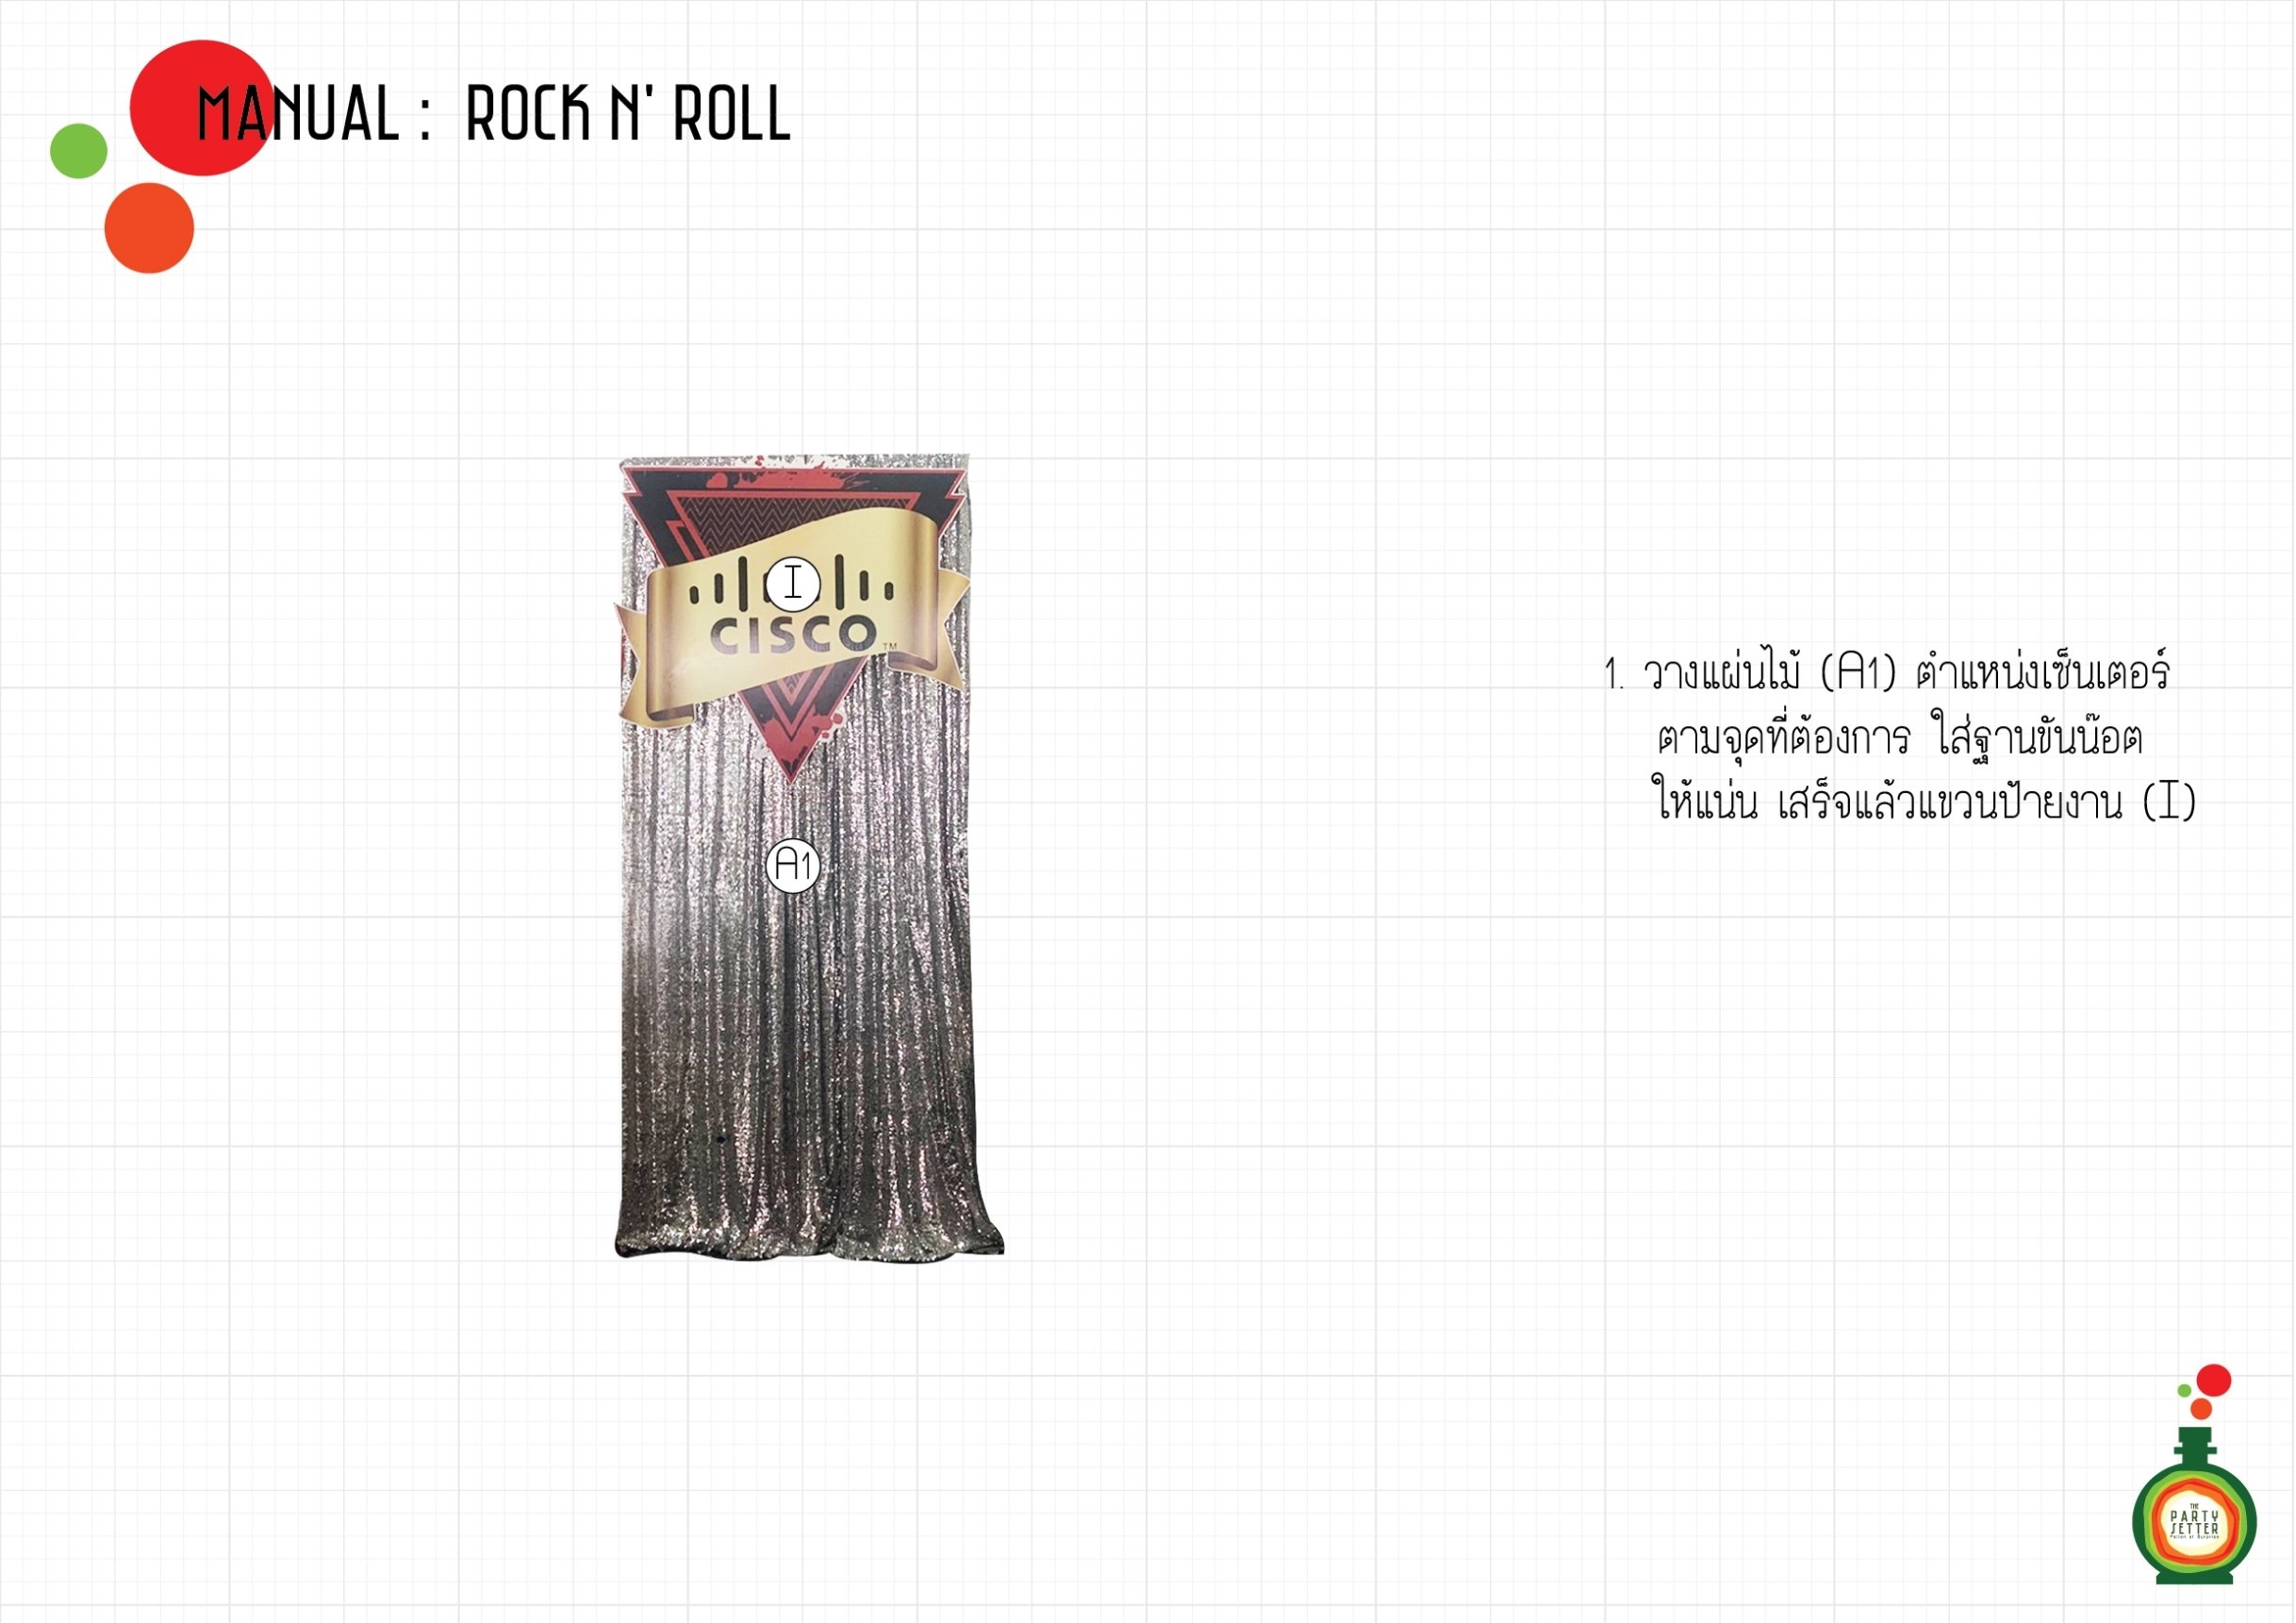 Manual_Rock n' Roll_01-01.jpg